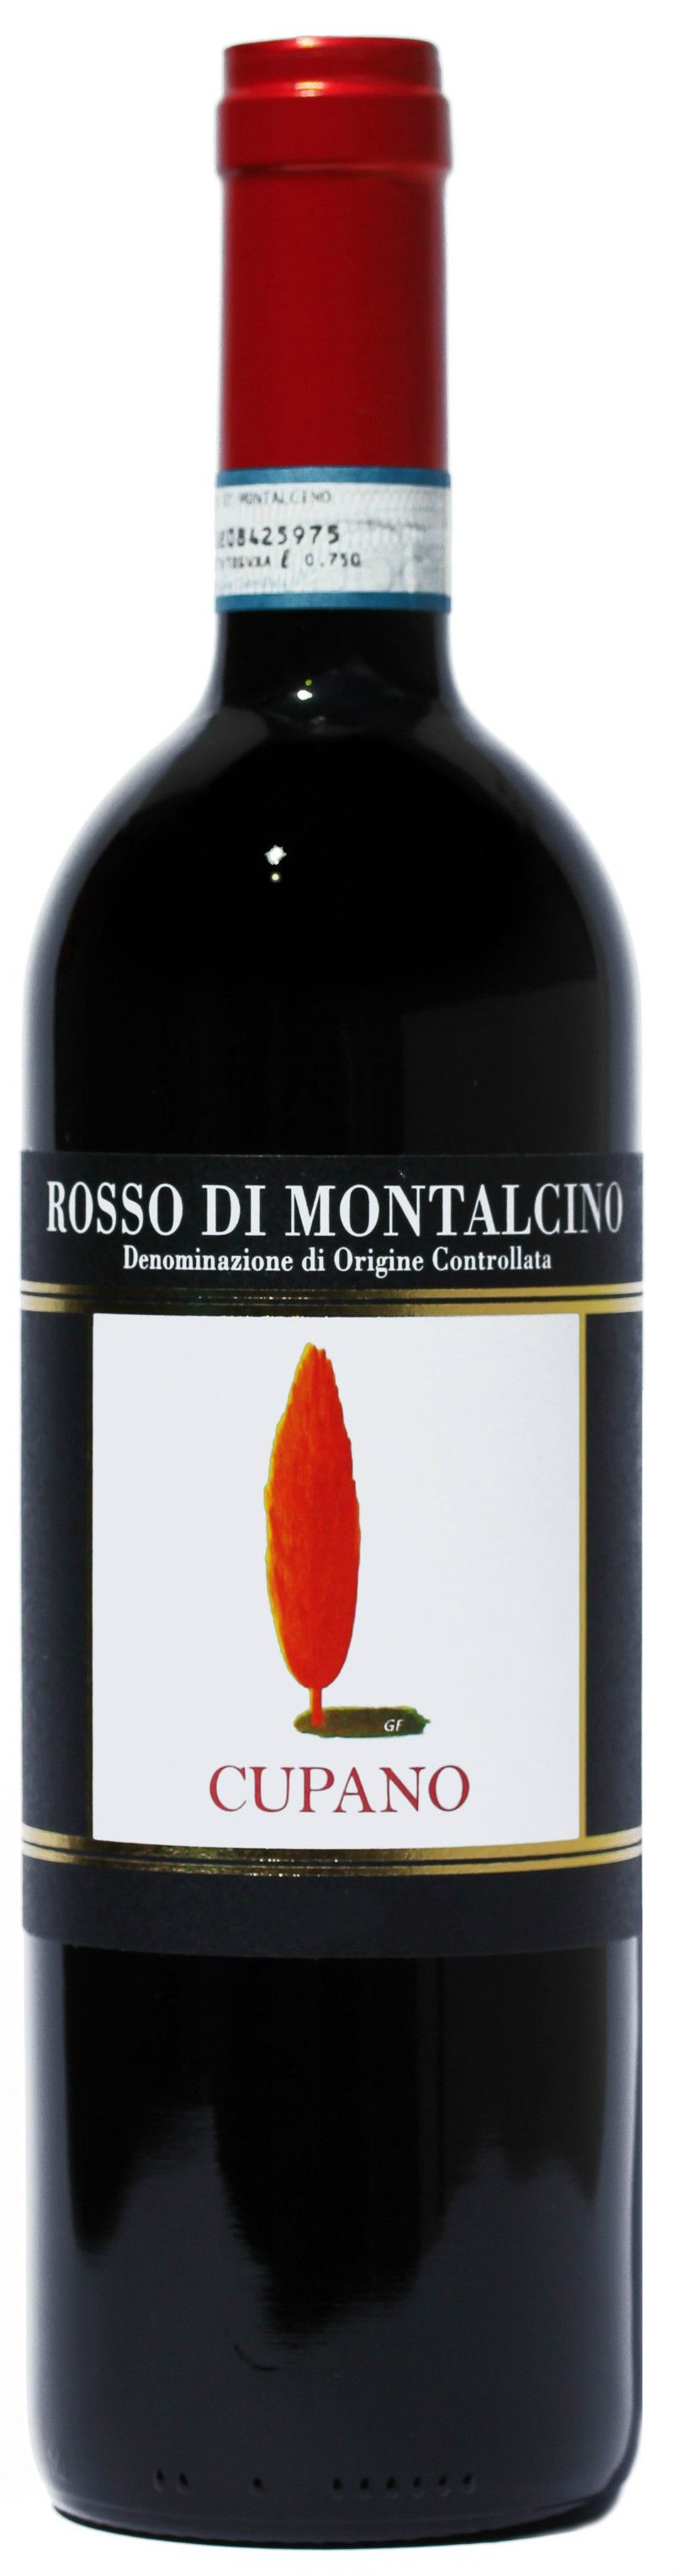 Cupano, Rosso Di Montalcino, 2005